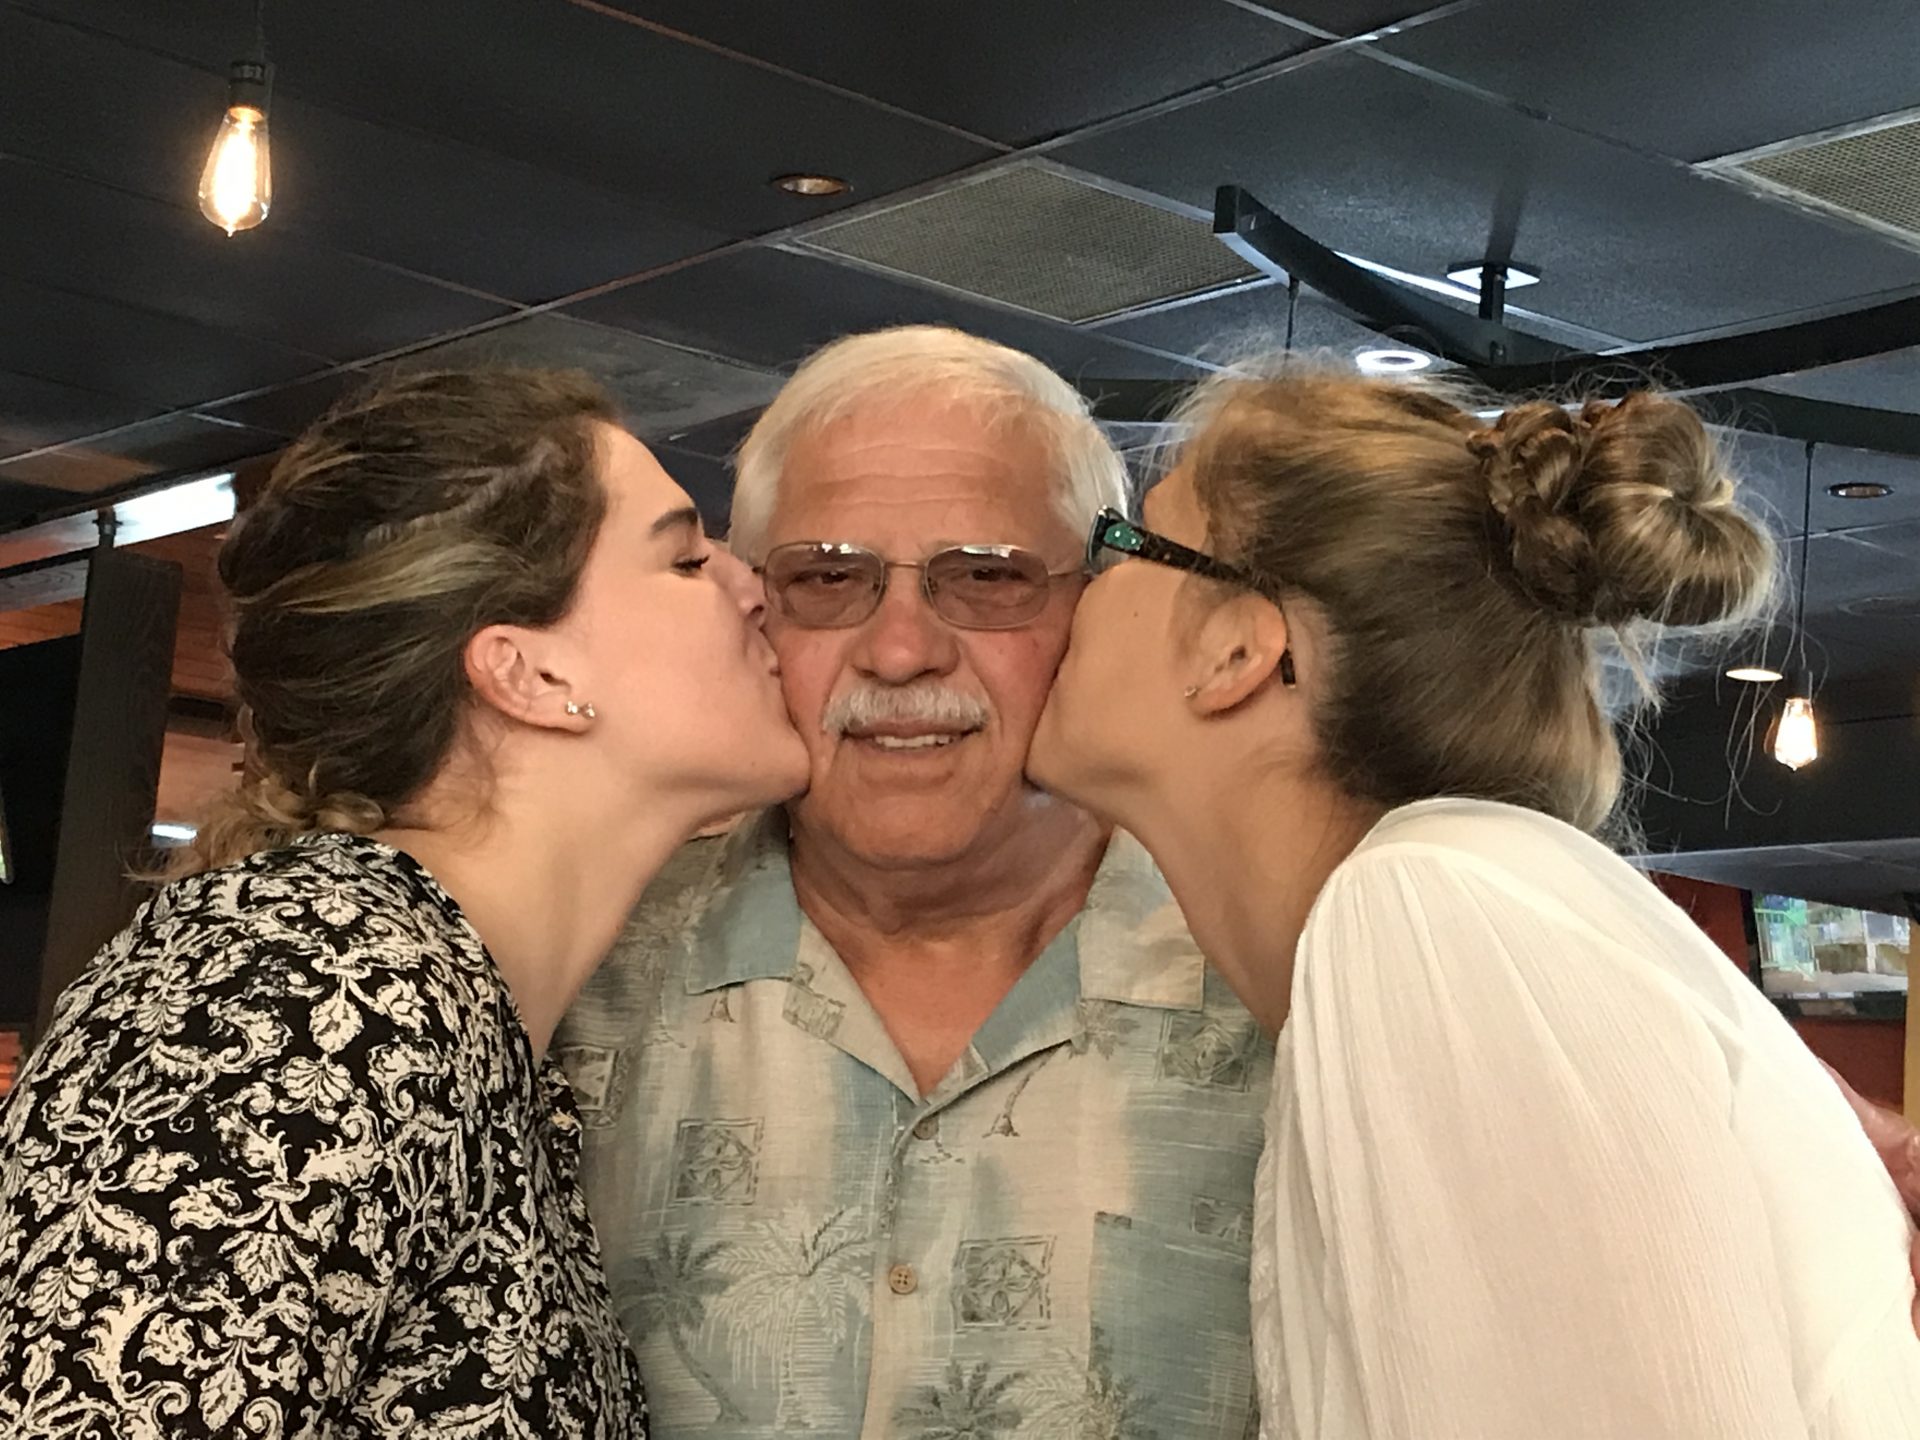 Grandpa is so loved